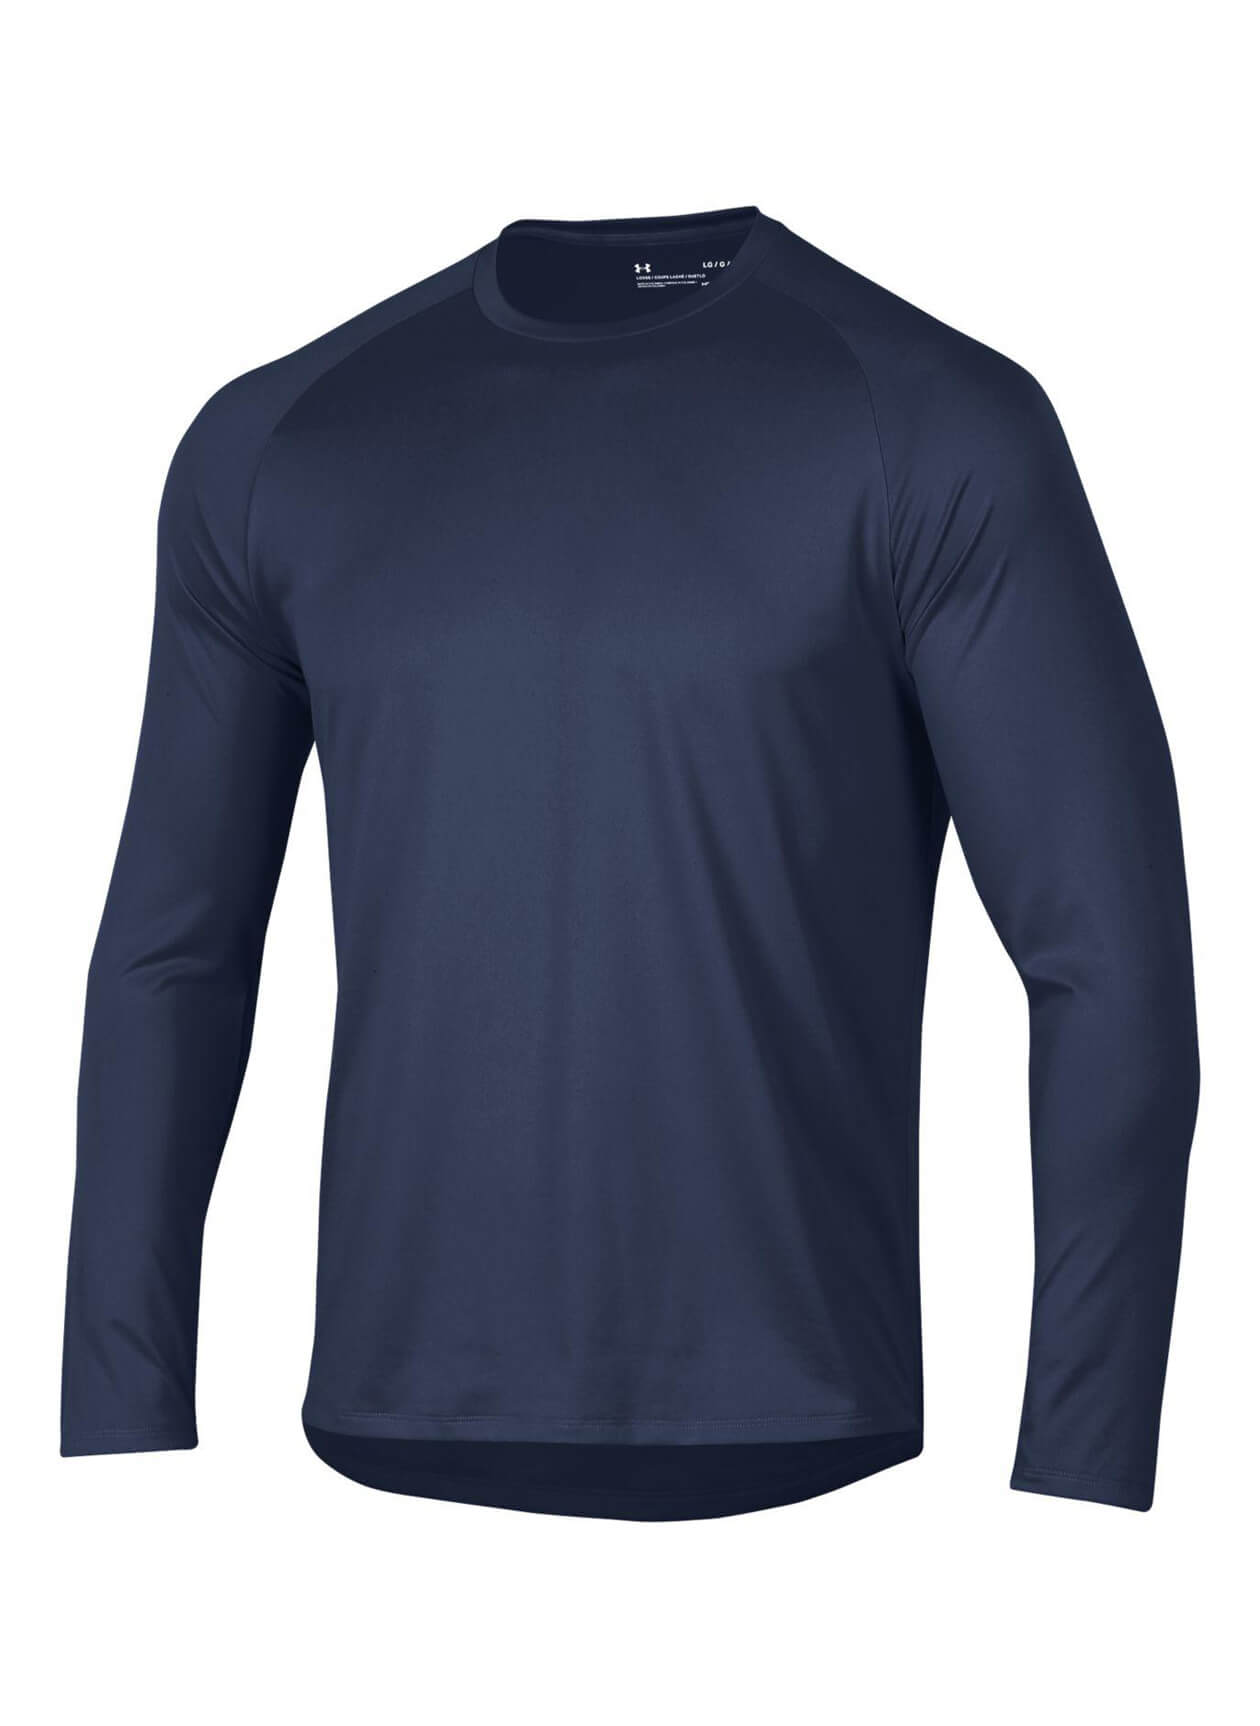 Under Armour UM0639 - Men's Long-Sleeve Tech T-Shirt